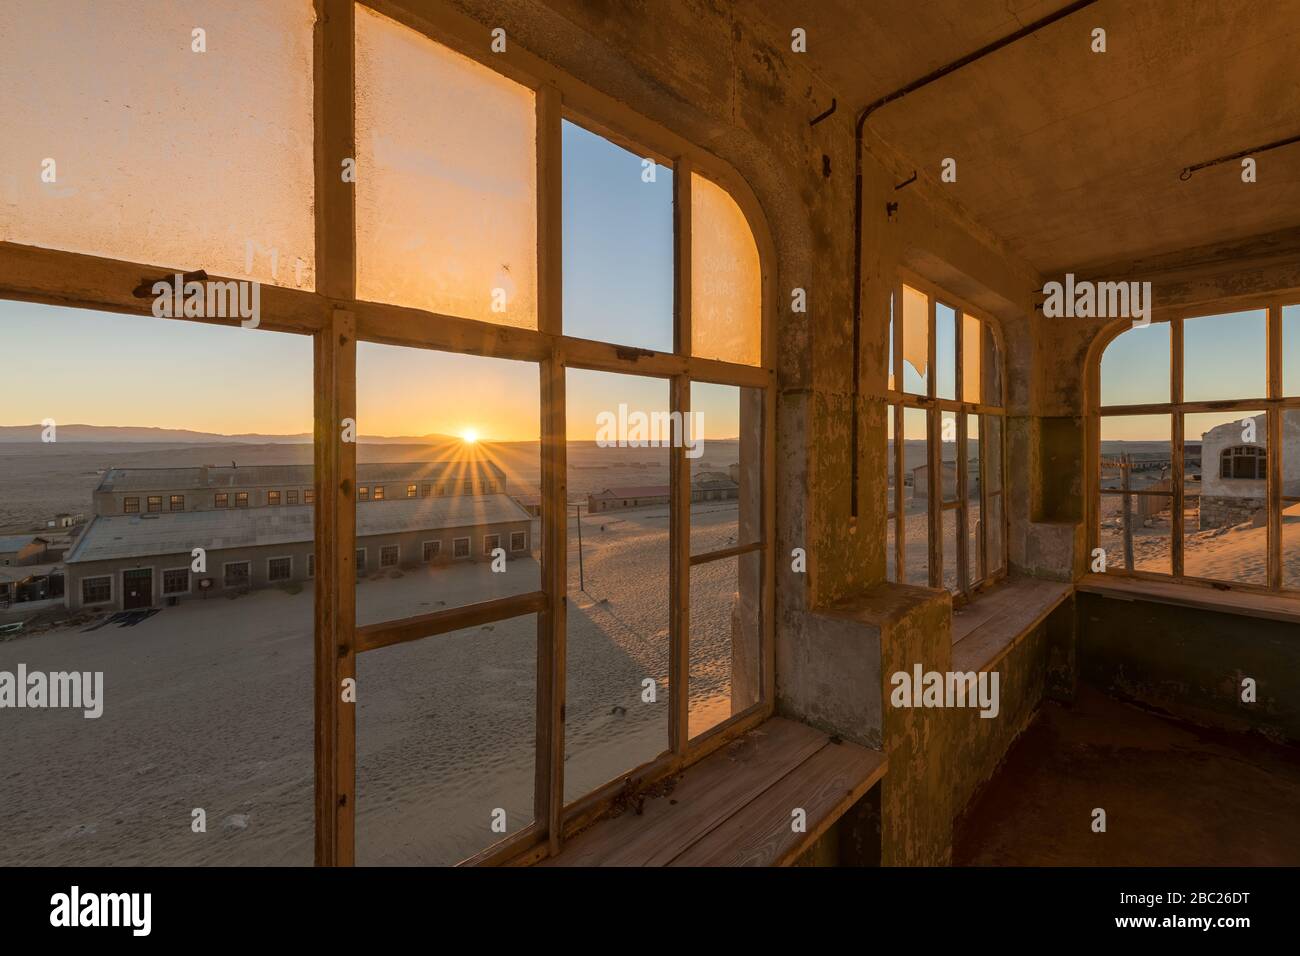 Una fotografía dramática dentro de una casa abandonada al amanecer, con una explosión de sol dorada y la construcción a través de ventanas rotas, tomada en la ciudad fantasma de Ko Foto de stock